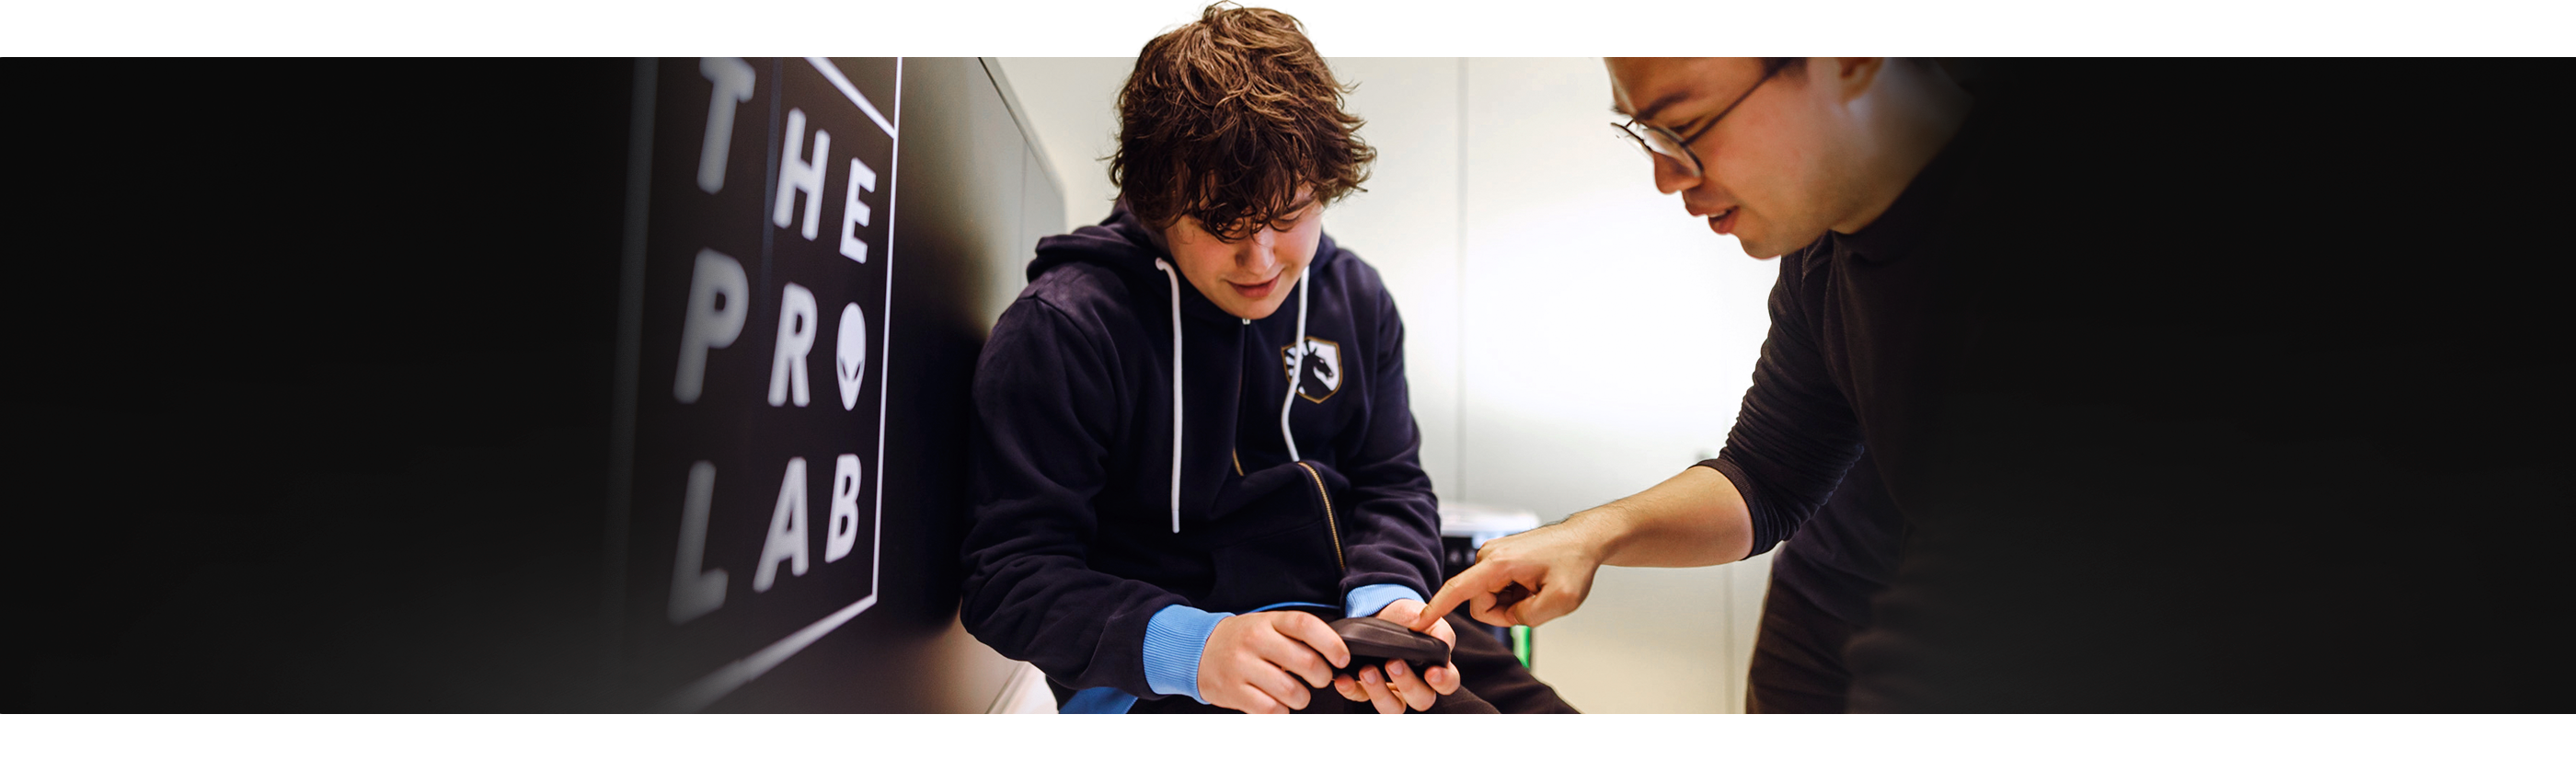 En dreng har en Dell Alienware Pro trådløs gamingmus i hånden, og en mand ved siden af ham peger på produktet.